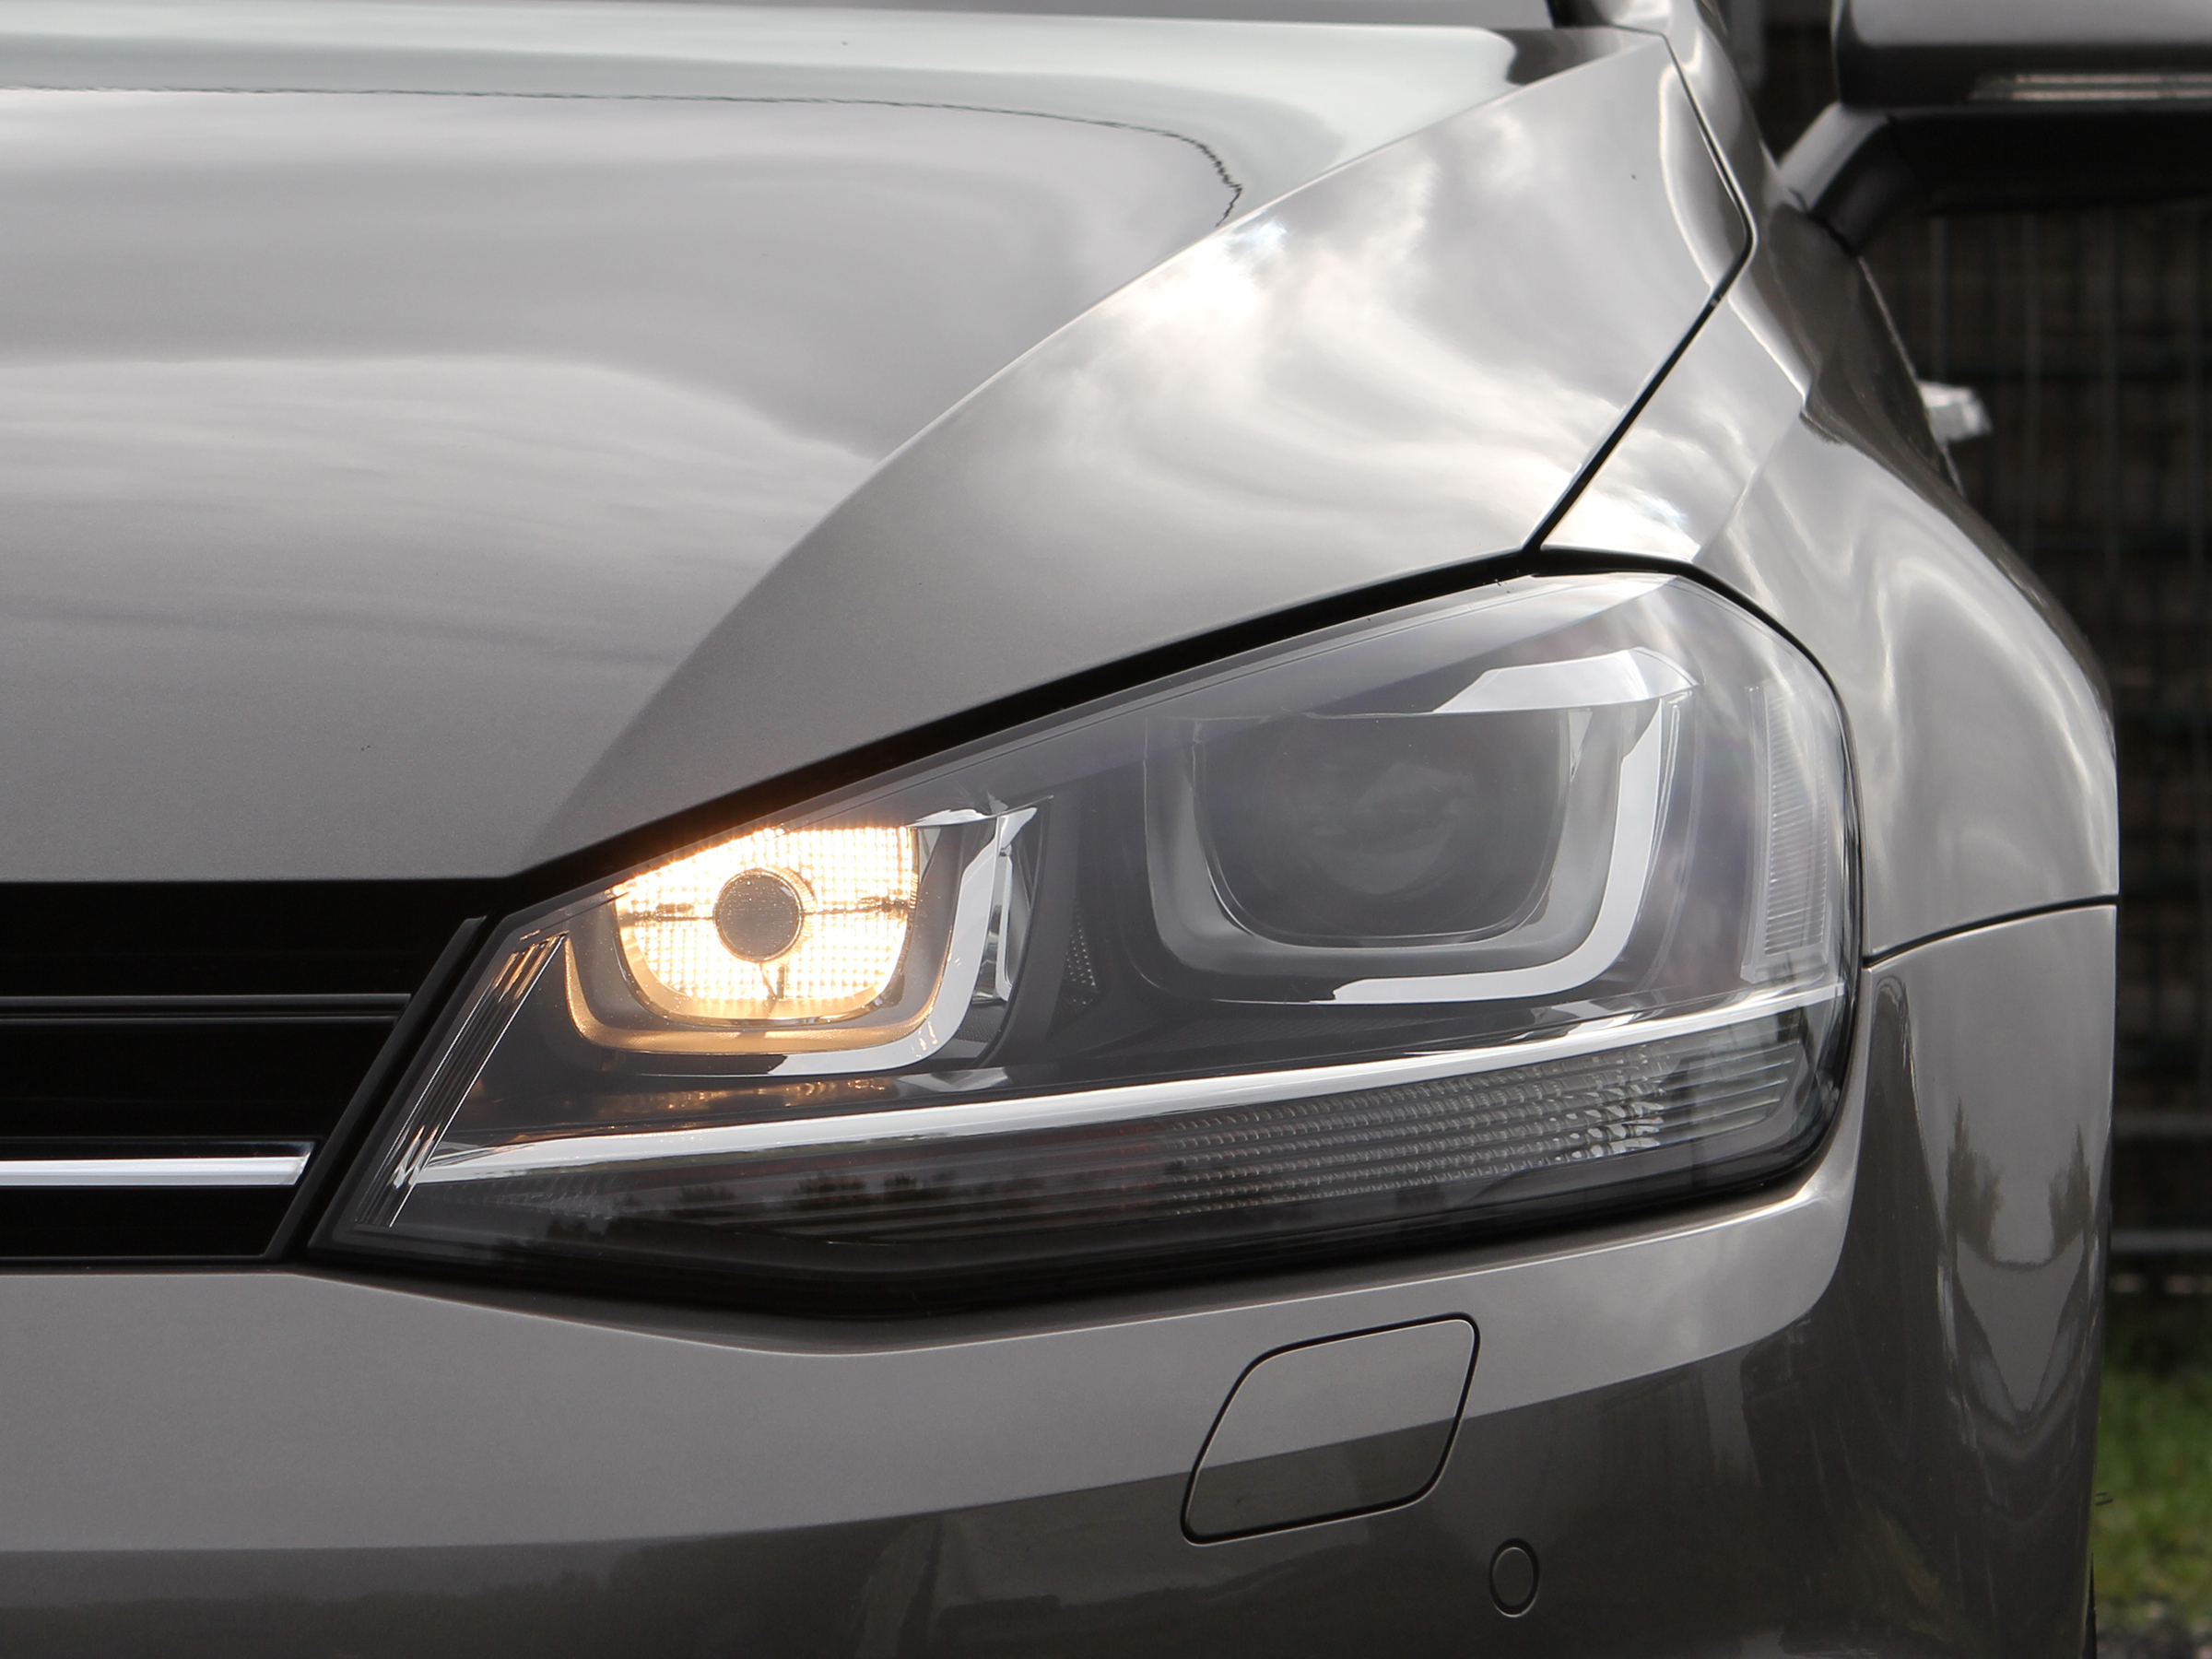 LED-Tagfahrlicht-Pack (Xenon-Weiß) für Volkswagen Golf 7